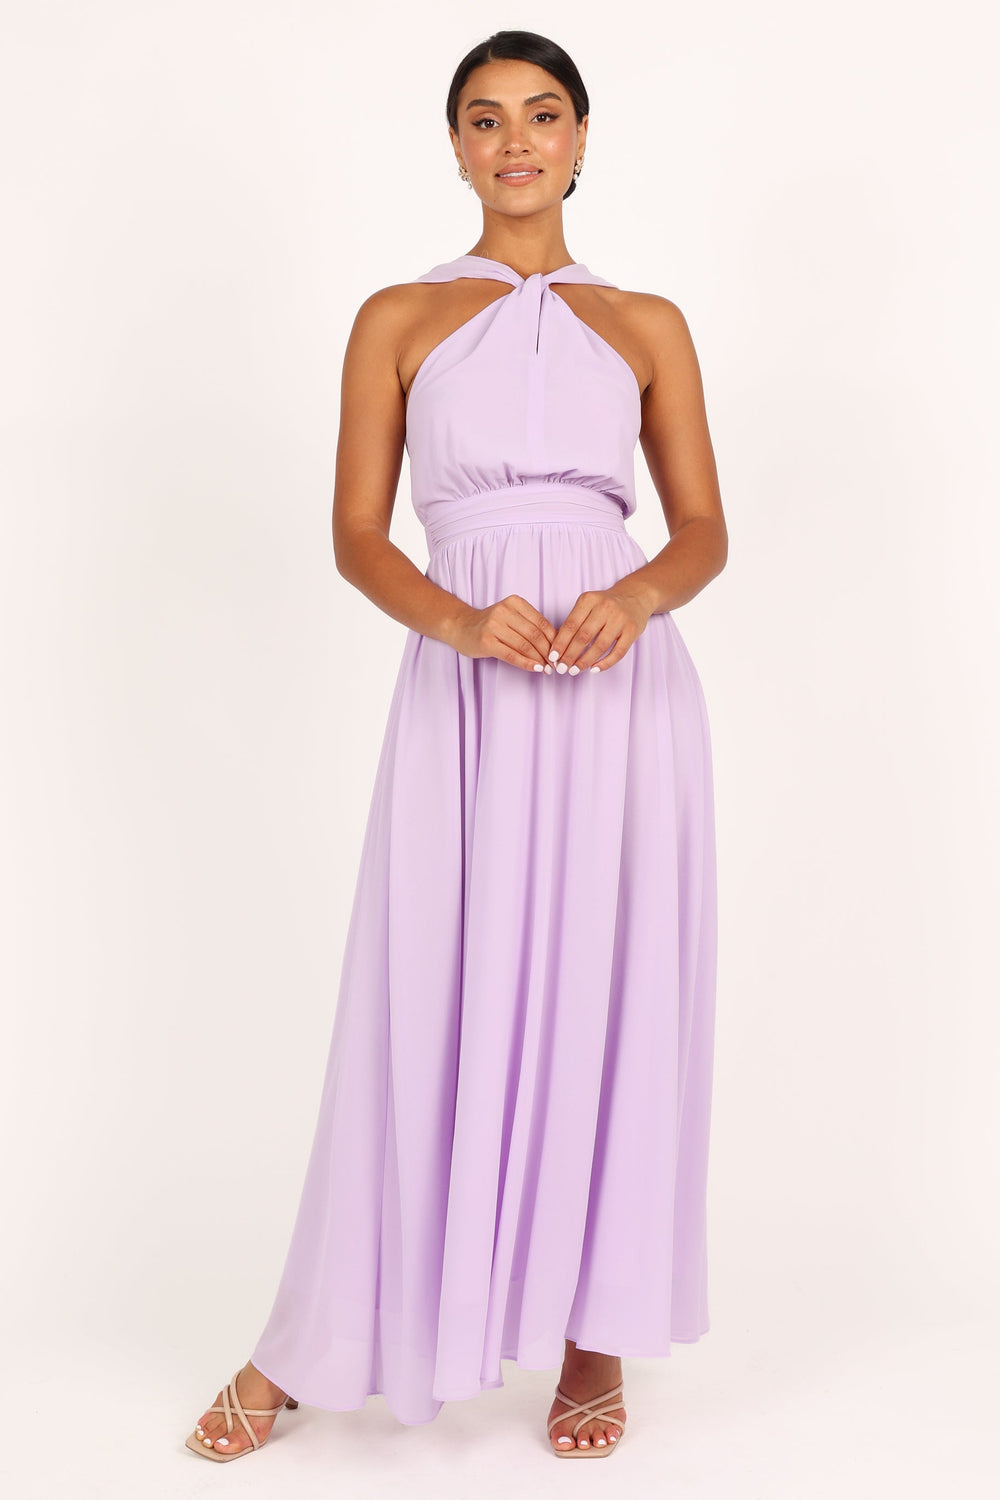 https://petalandpup.com/cdn/shop/products/petal-and-pup-usa-dresses-blossom-halterneck-maxi-dress-lavender-33537180467377_1000x.jpg?v=1682103140